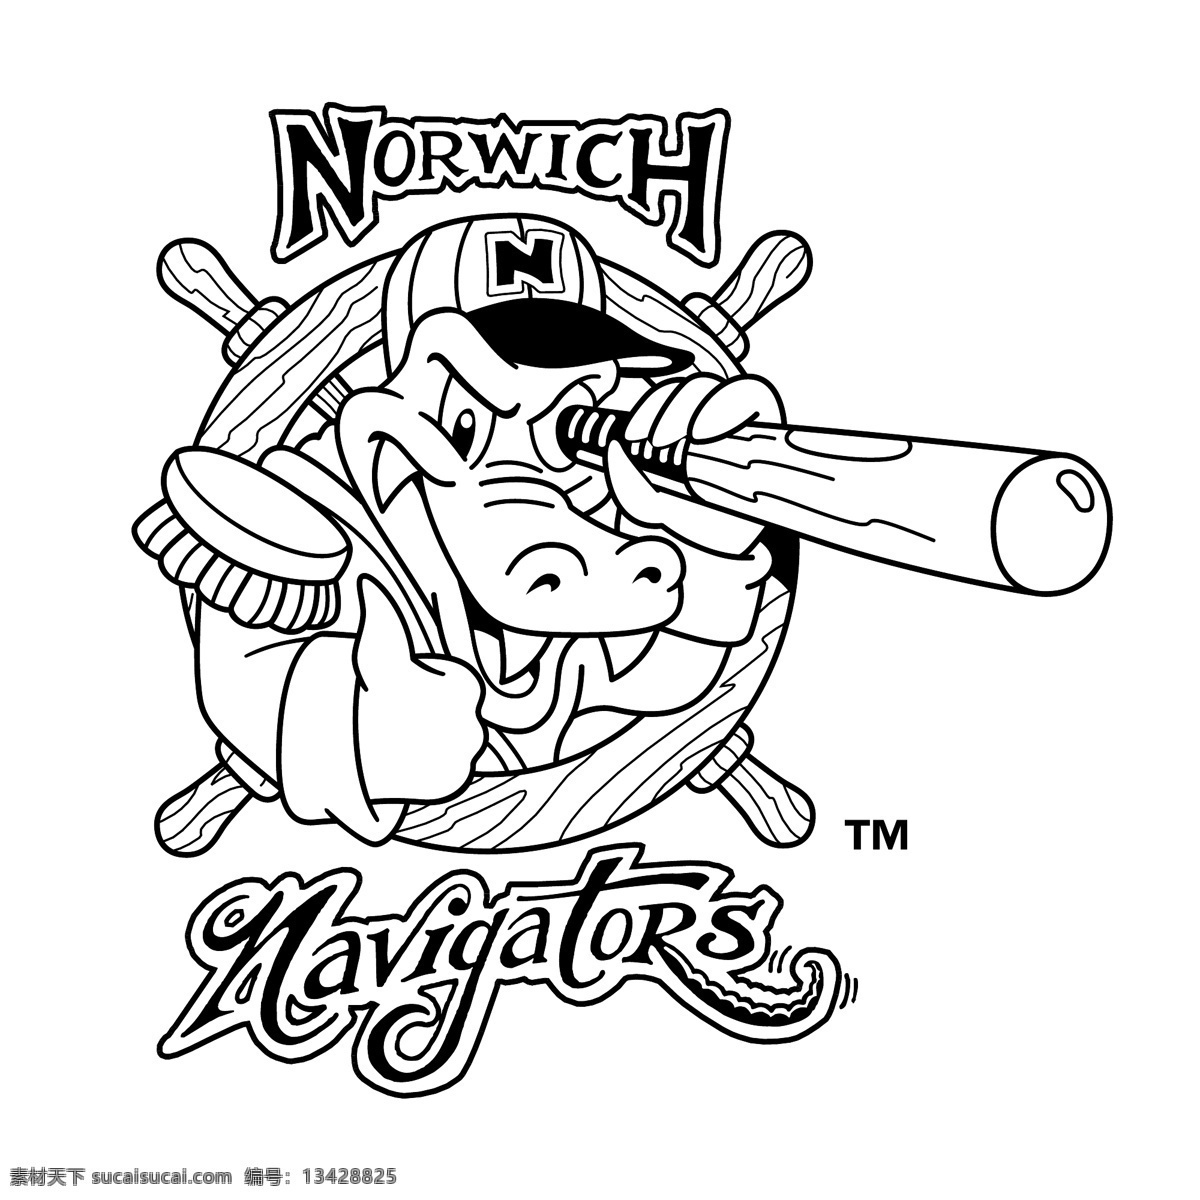 诺维奇领航员 诺维奇 航海家 矢量 航海家向量 向量的航海 航海 向量 联盟 诺维奇联盟 矢量图 建筑家居